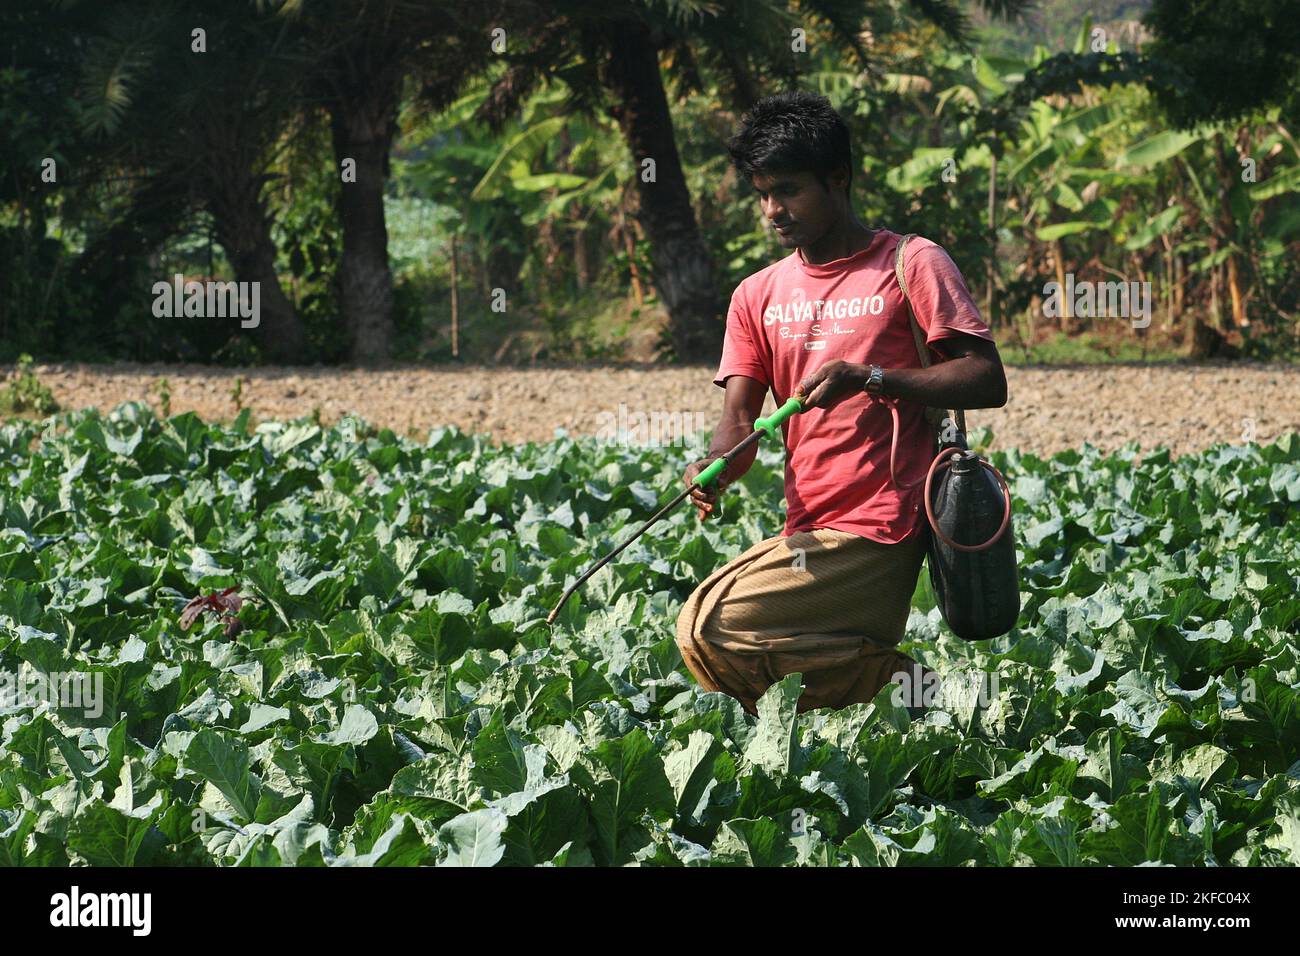 Un agriculteur répand de l'engrais dans un champ de chou. Dumuria, Khulna, Bangladesh. Banque D'Images